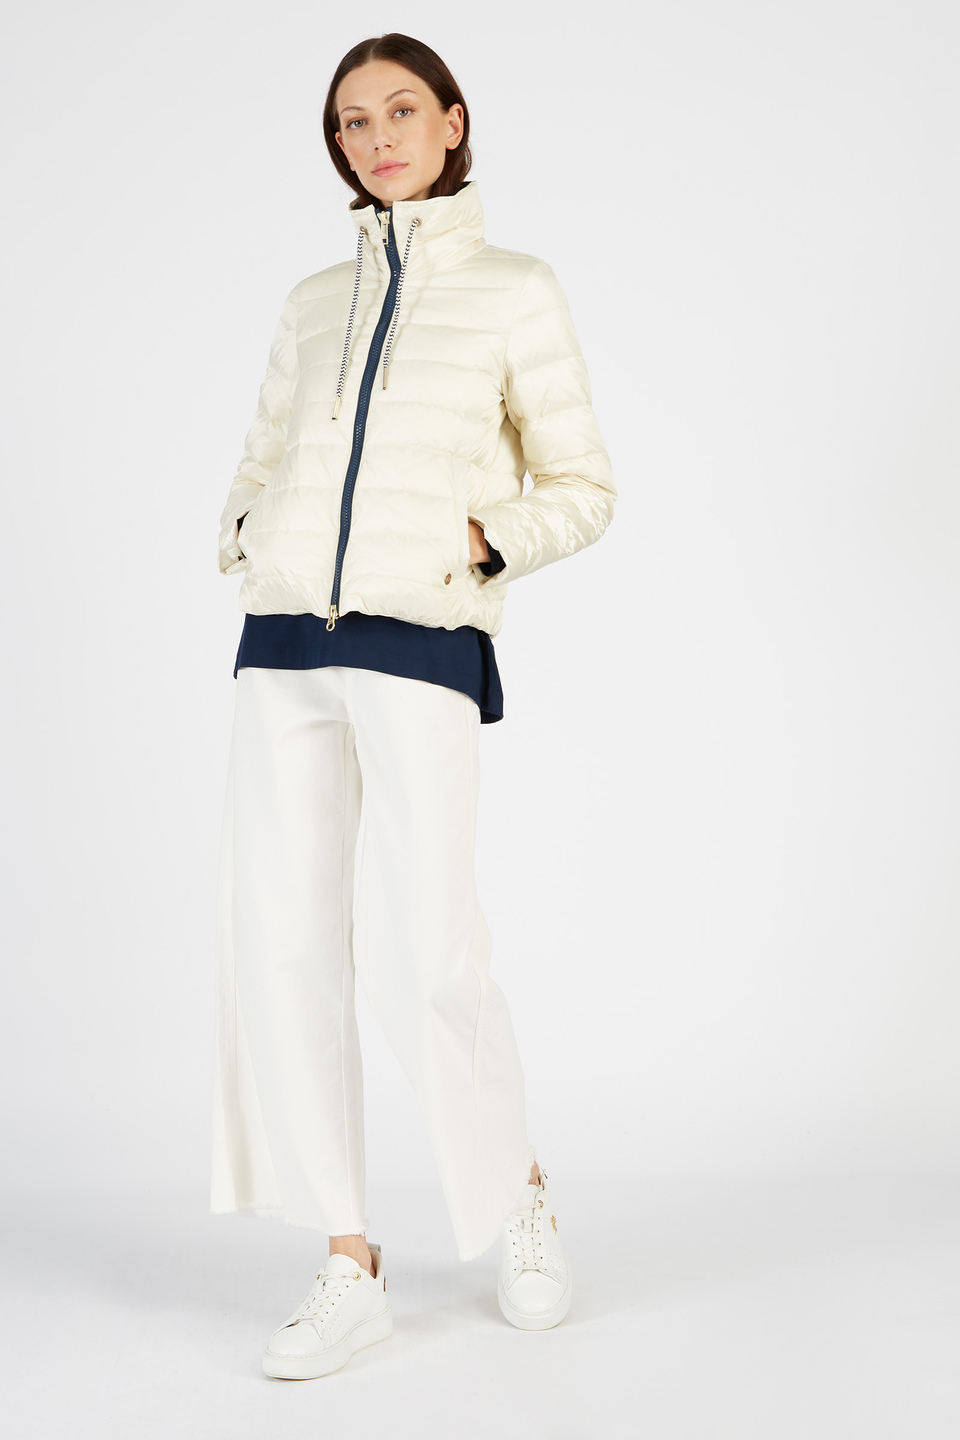 Large pantalon taille haute pour femme en coton stretch | La Martina - Official Online Shop